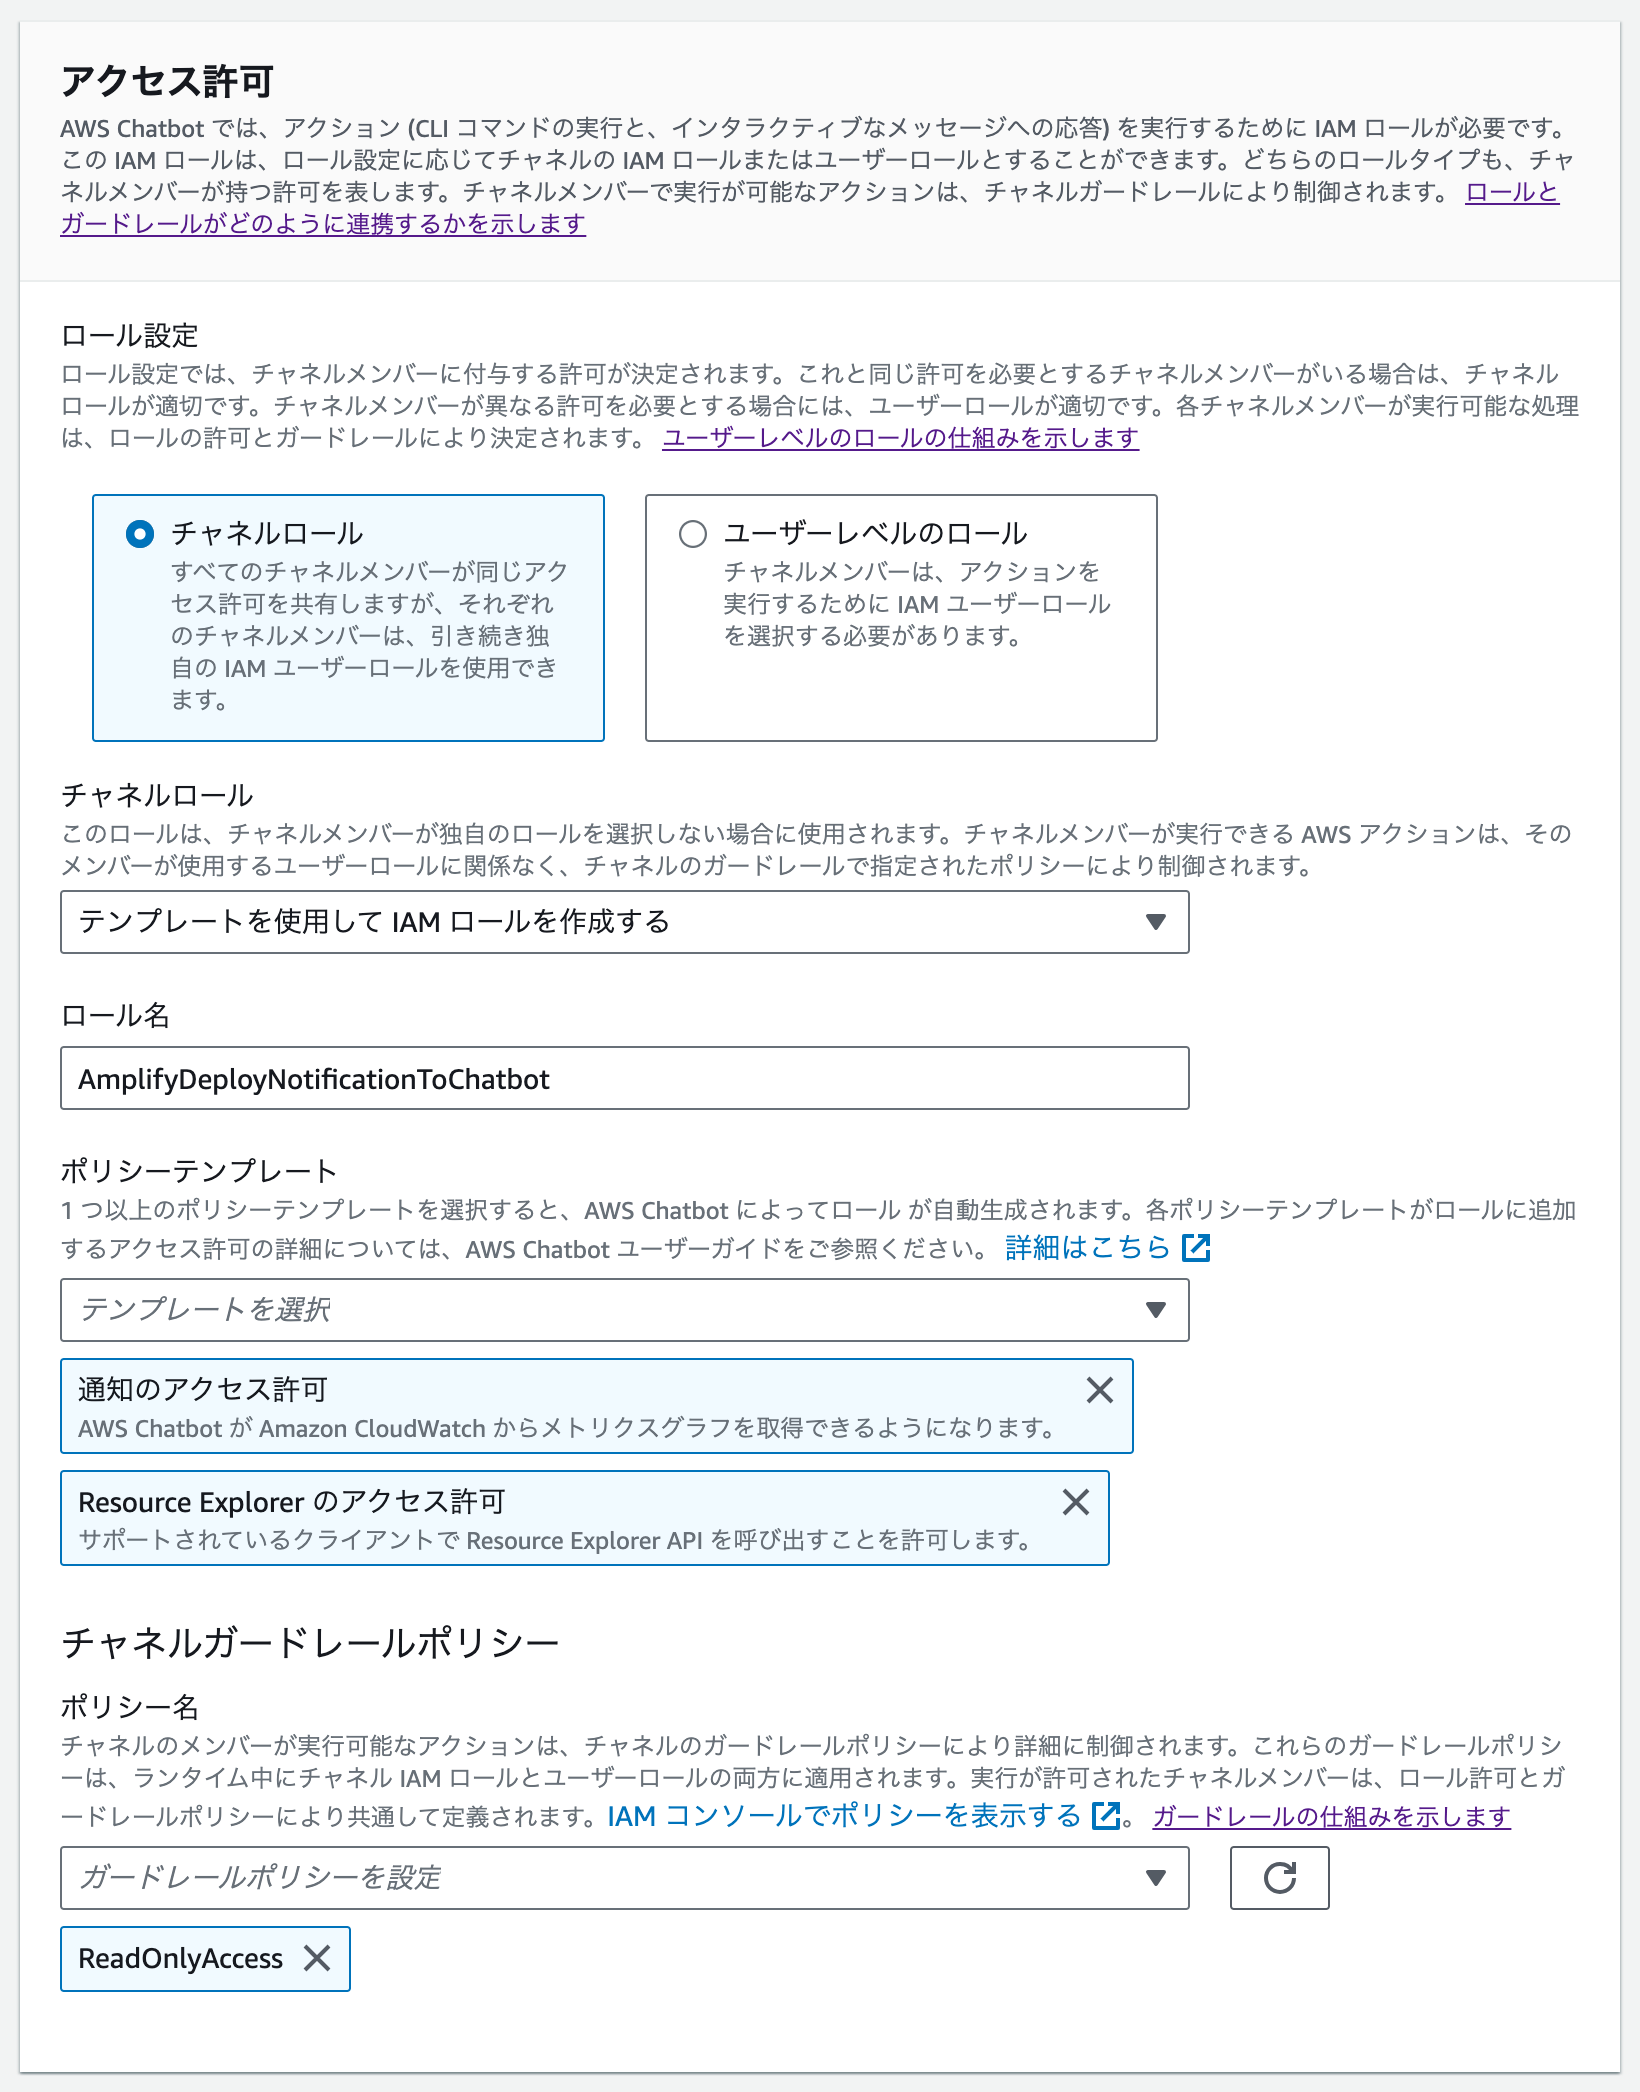 スクリーンショット：AWS Chatbot の アクセス許可の設定項目